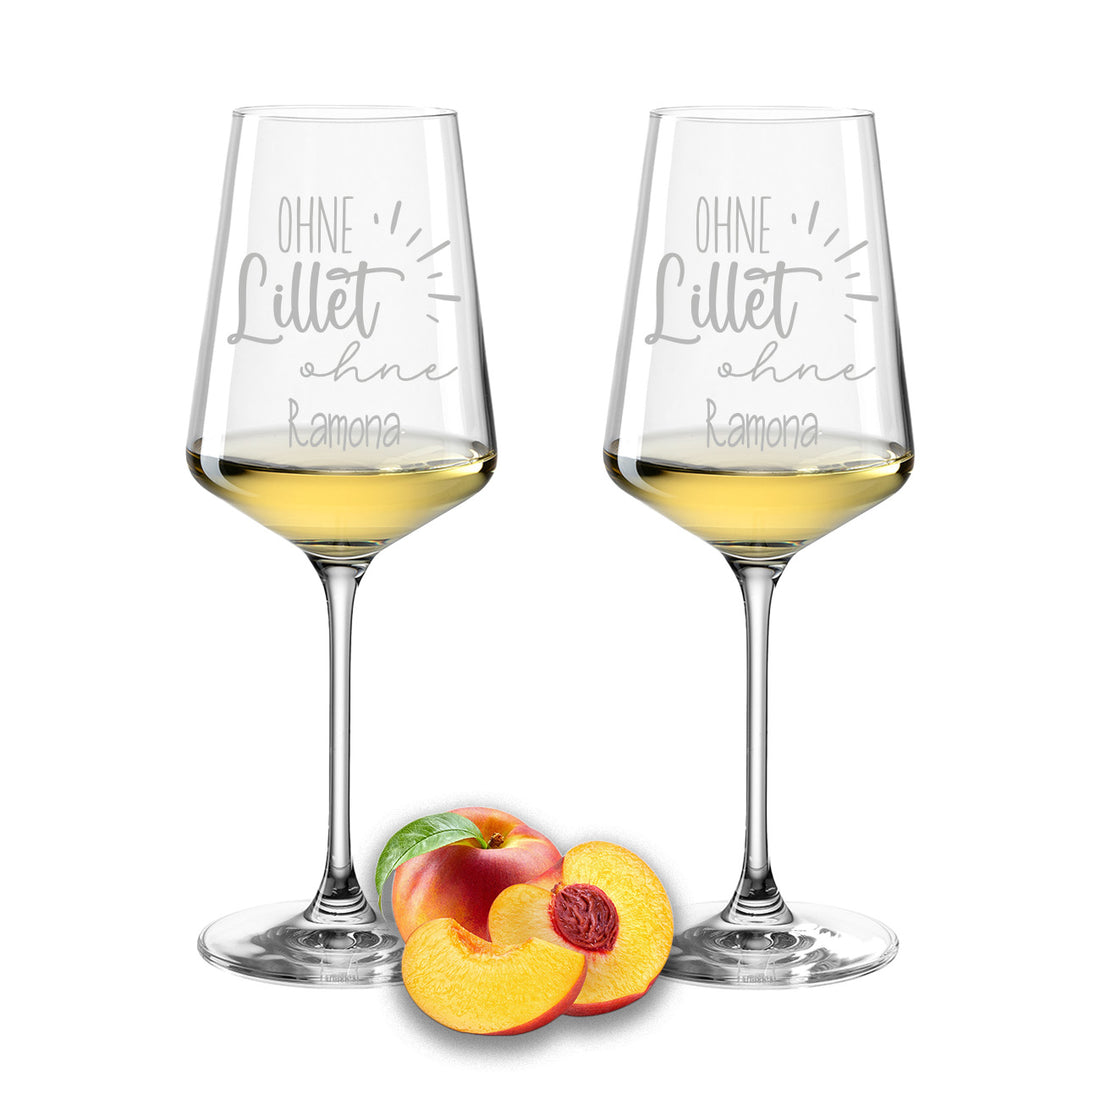 Weinglas mit Gravur Leonardo Puccini "OHNE LILLET OHNE ….." 2 Gläser mit Wunschname